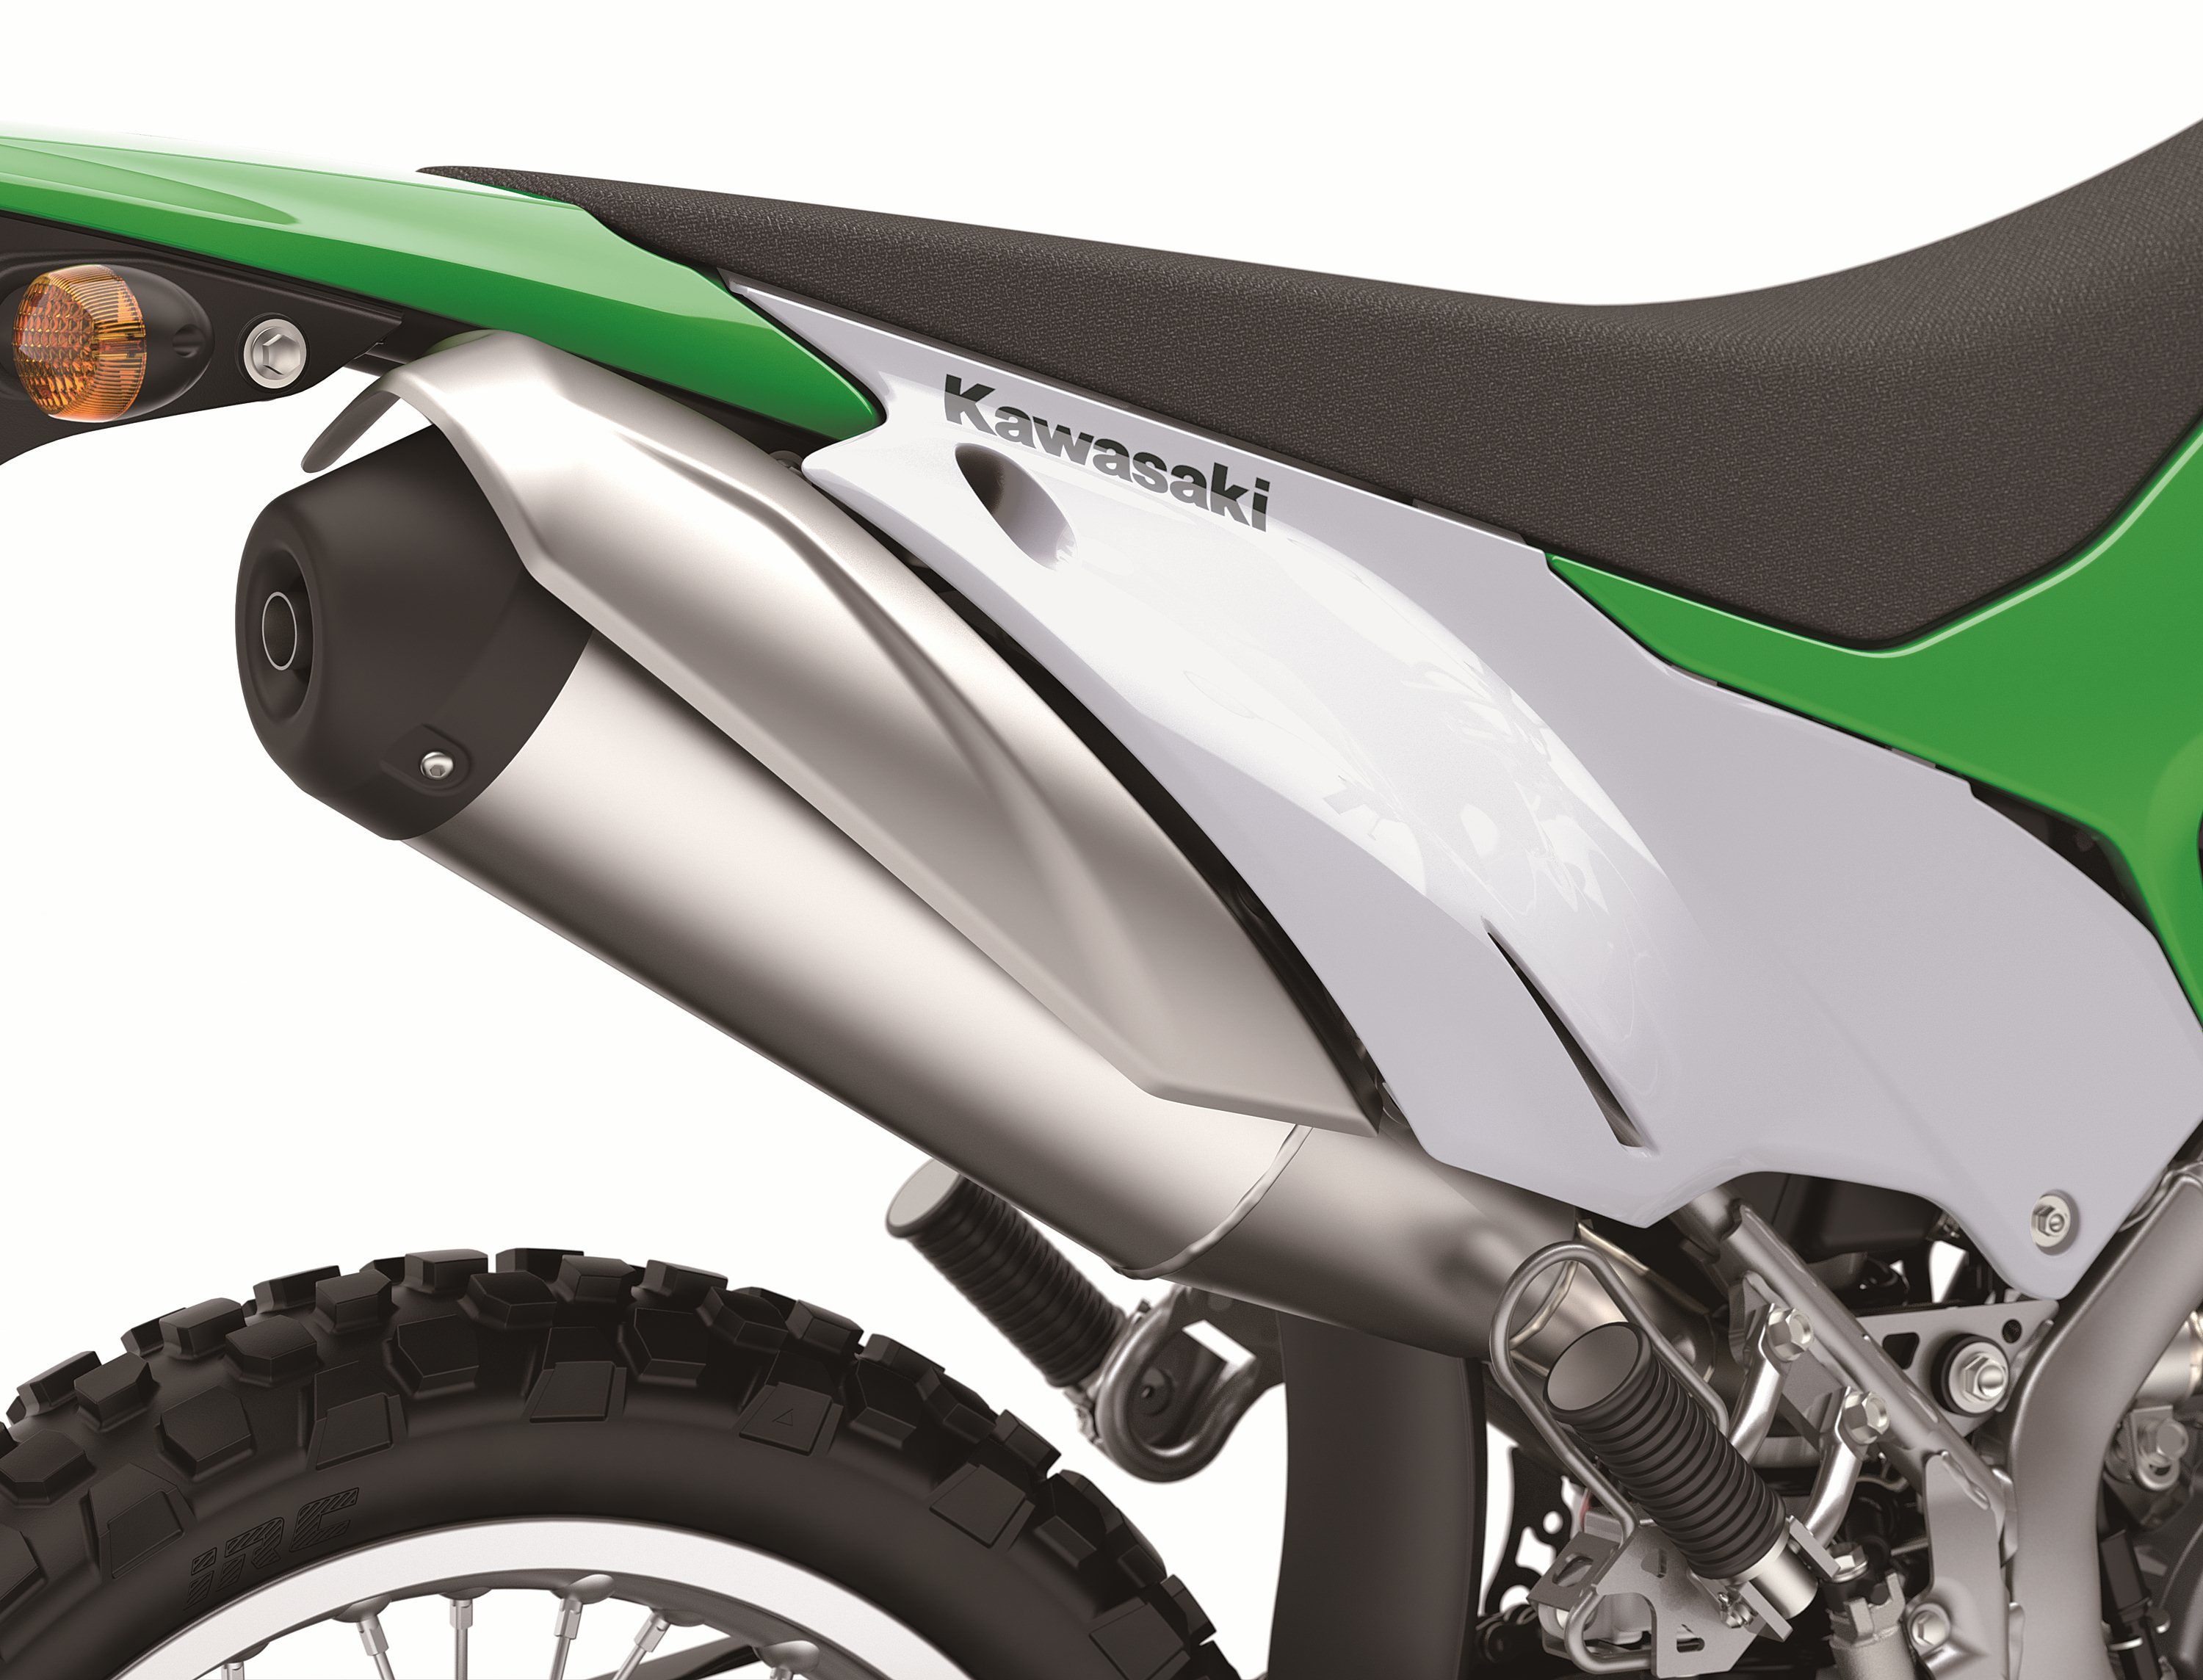 2020 - 2021 Kawasaki KLX230